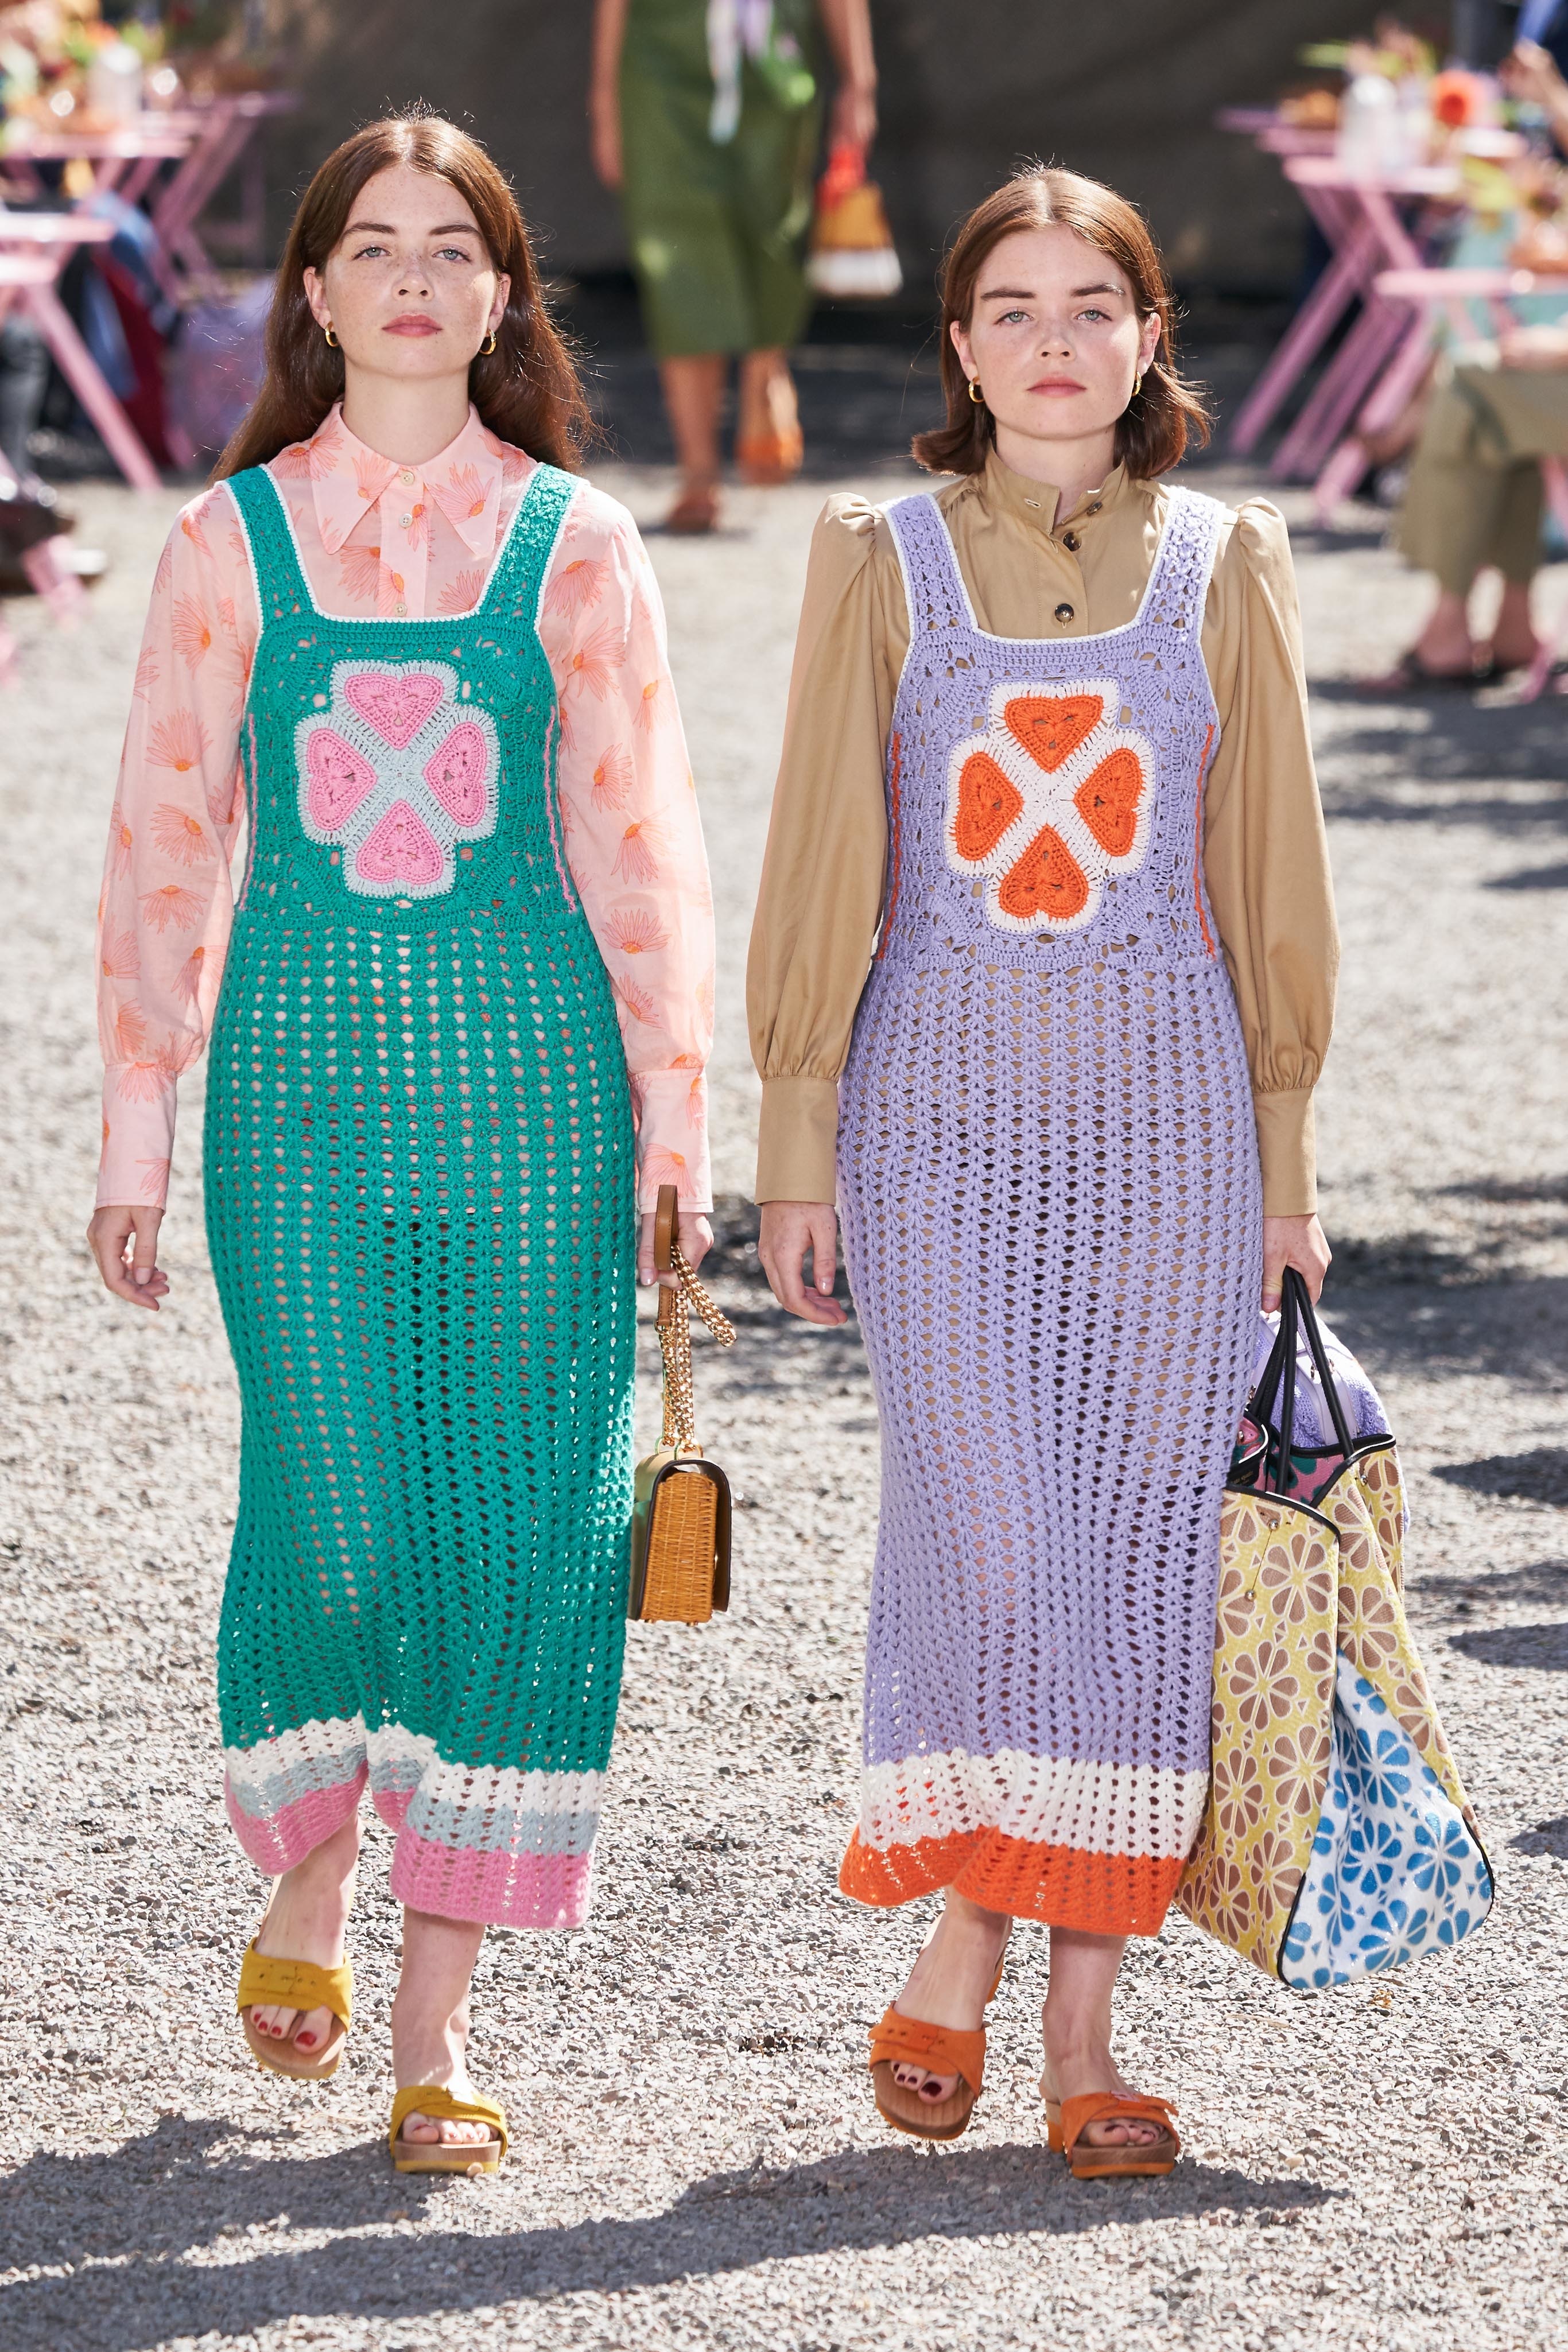 thiết kế vải móc màu sắc kate spade new york - xu hướng thời trang xuân hè 2020